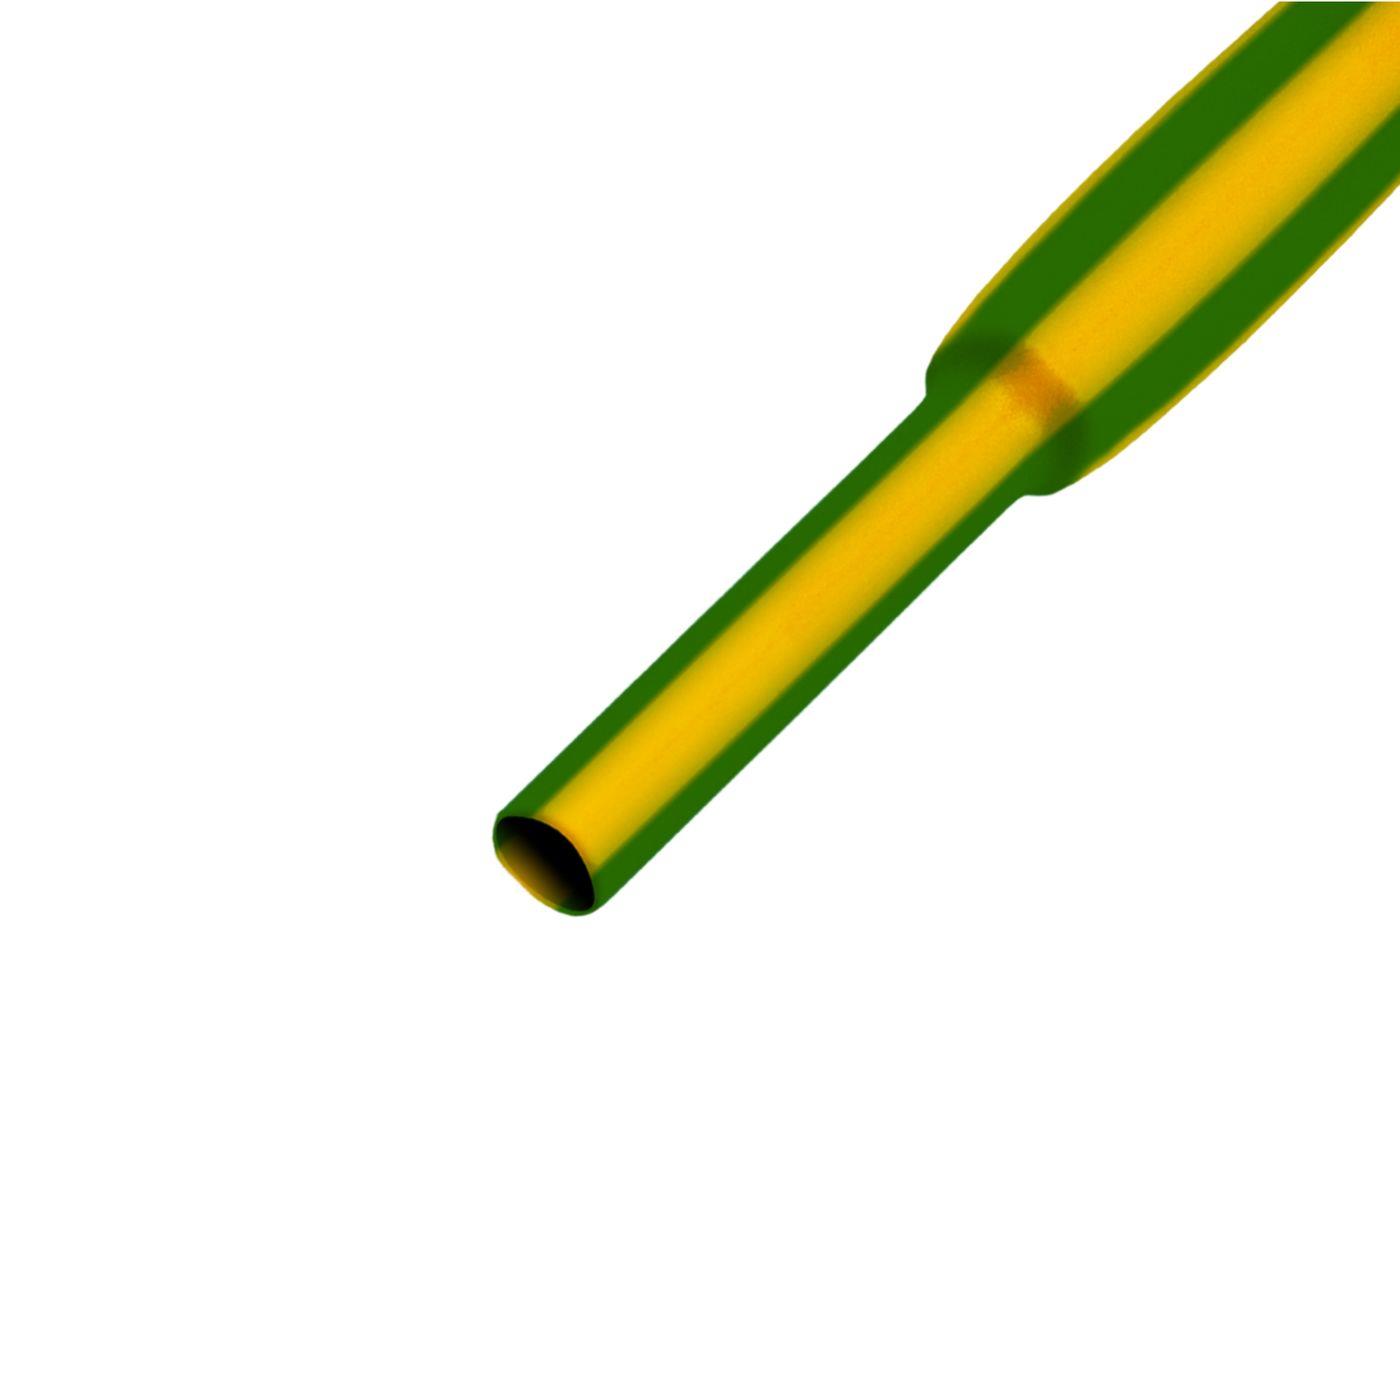 9,5m Schrumpfschlauch Box 2:1 4,8 -> 2,4mm Grün Gelb Flexibel